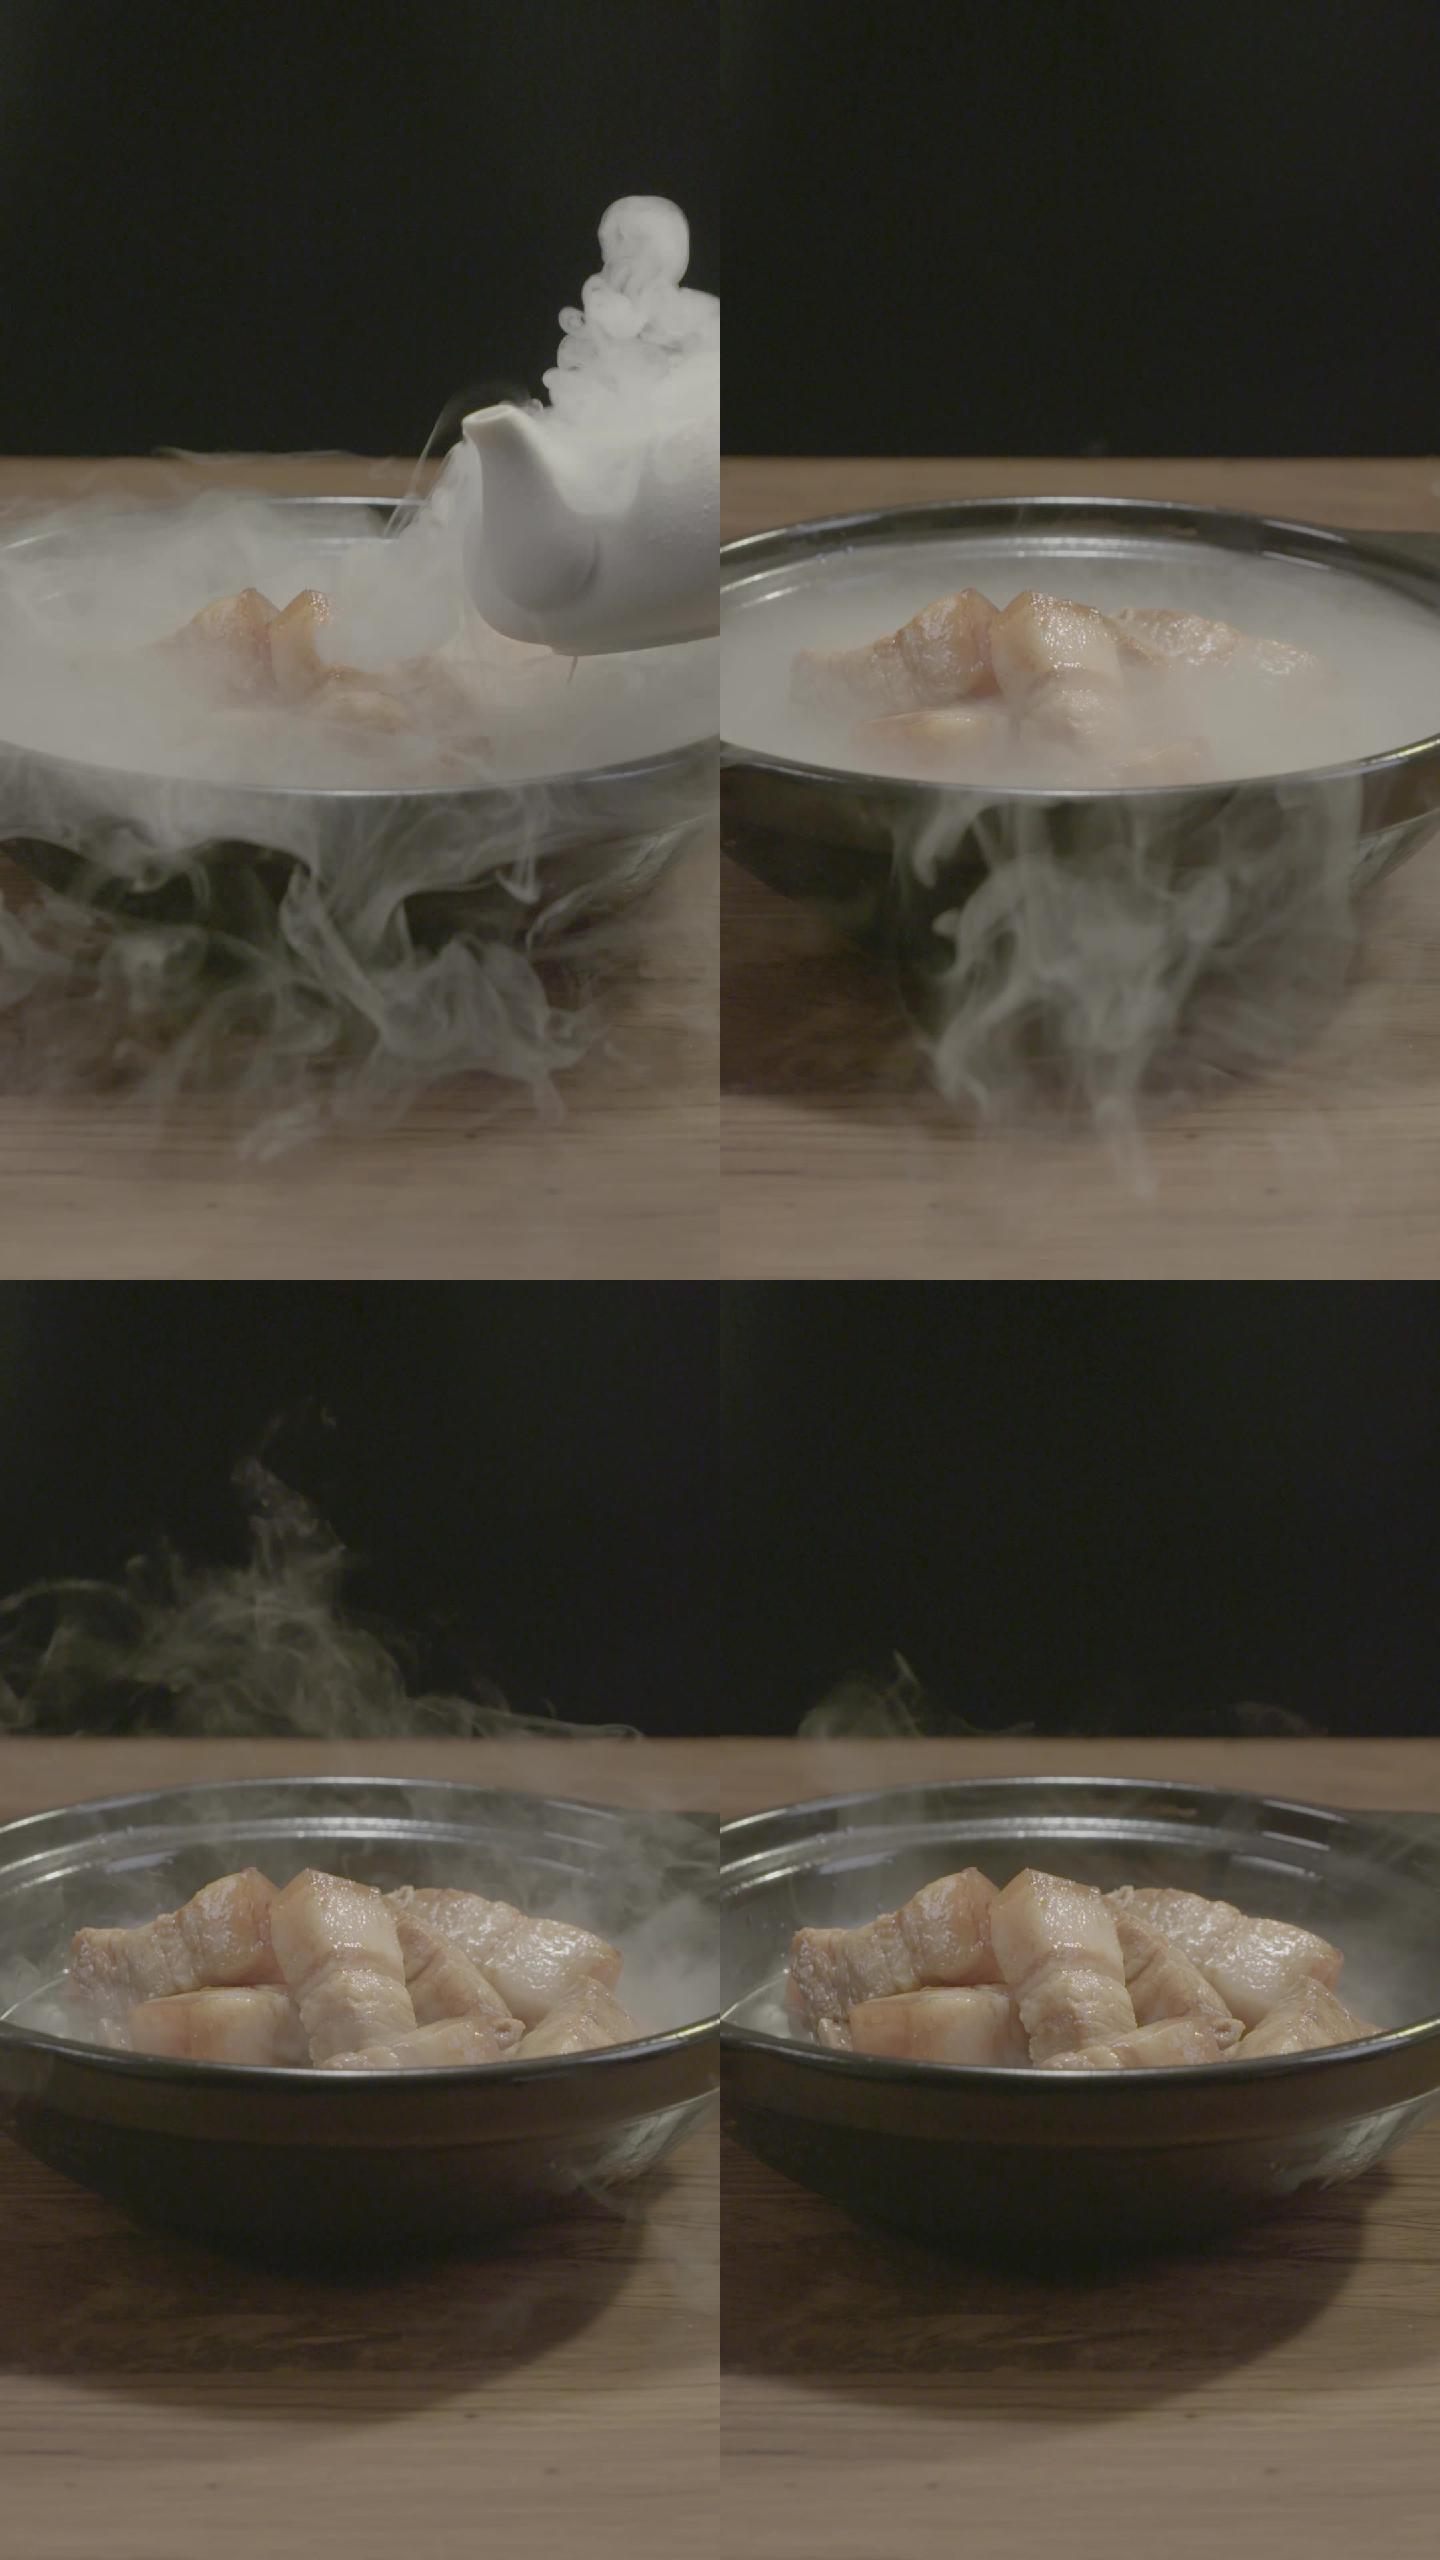 在砂锅里的肉块冒烟展示画面-log